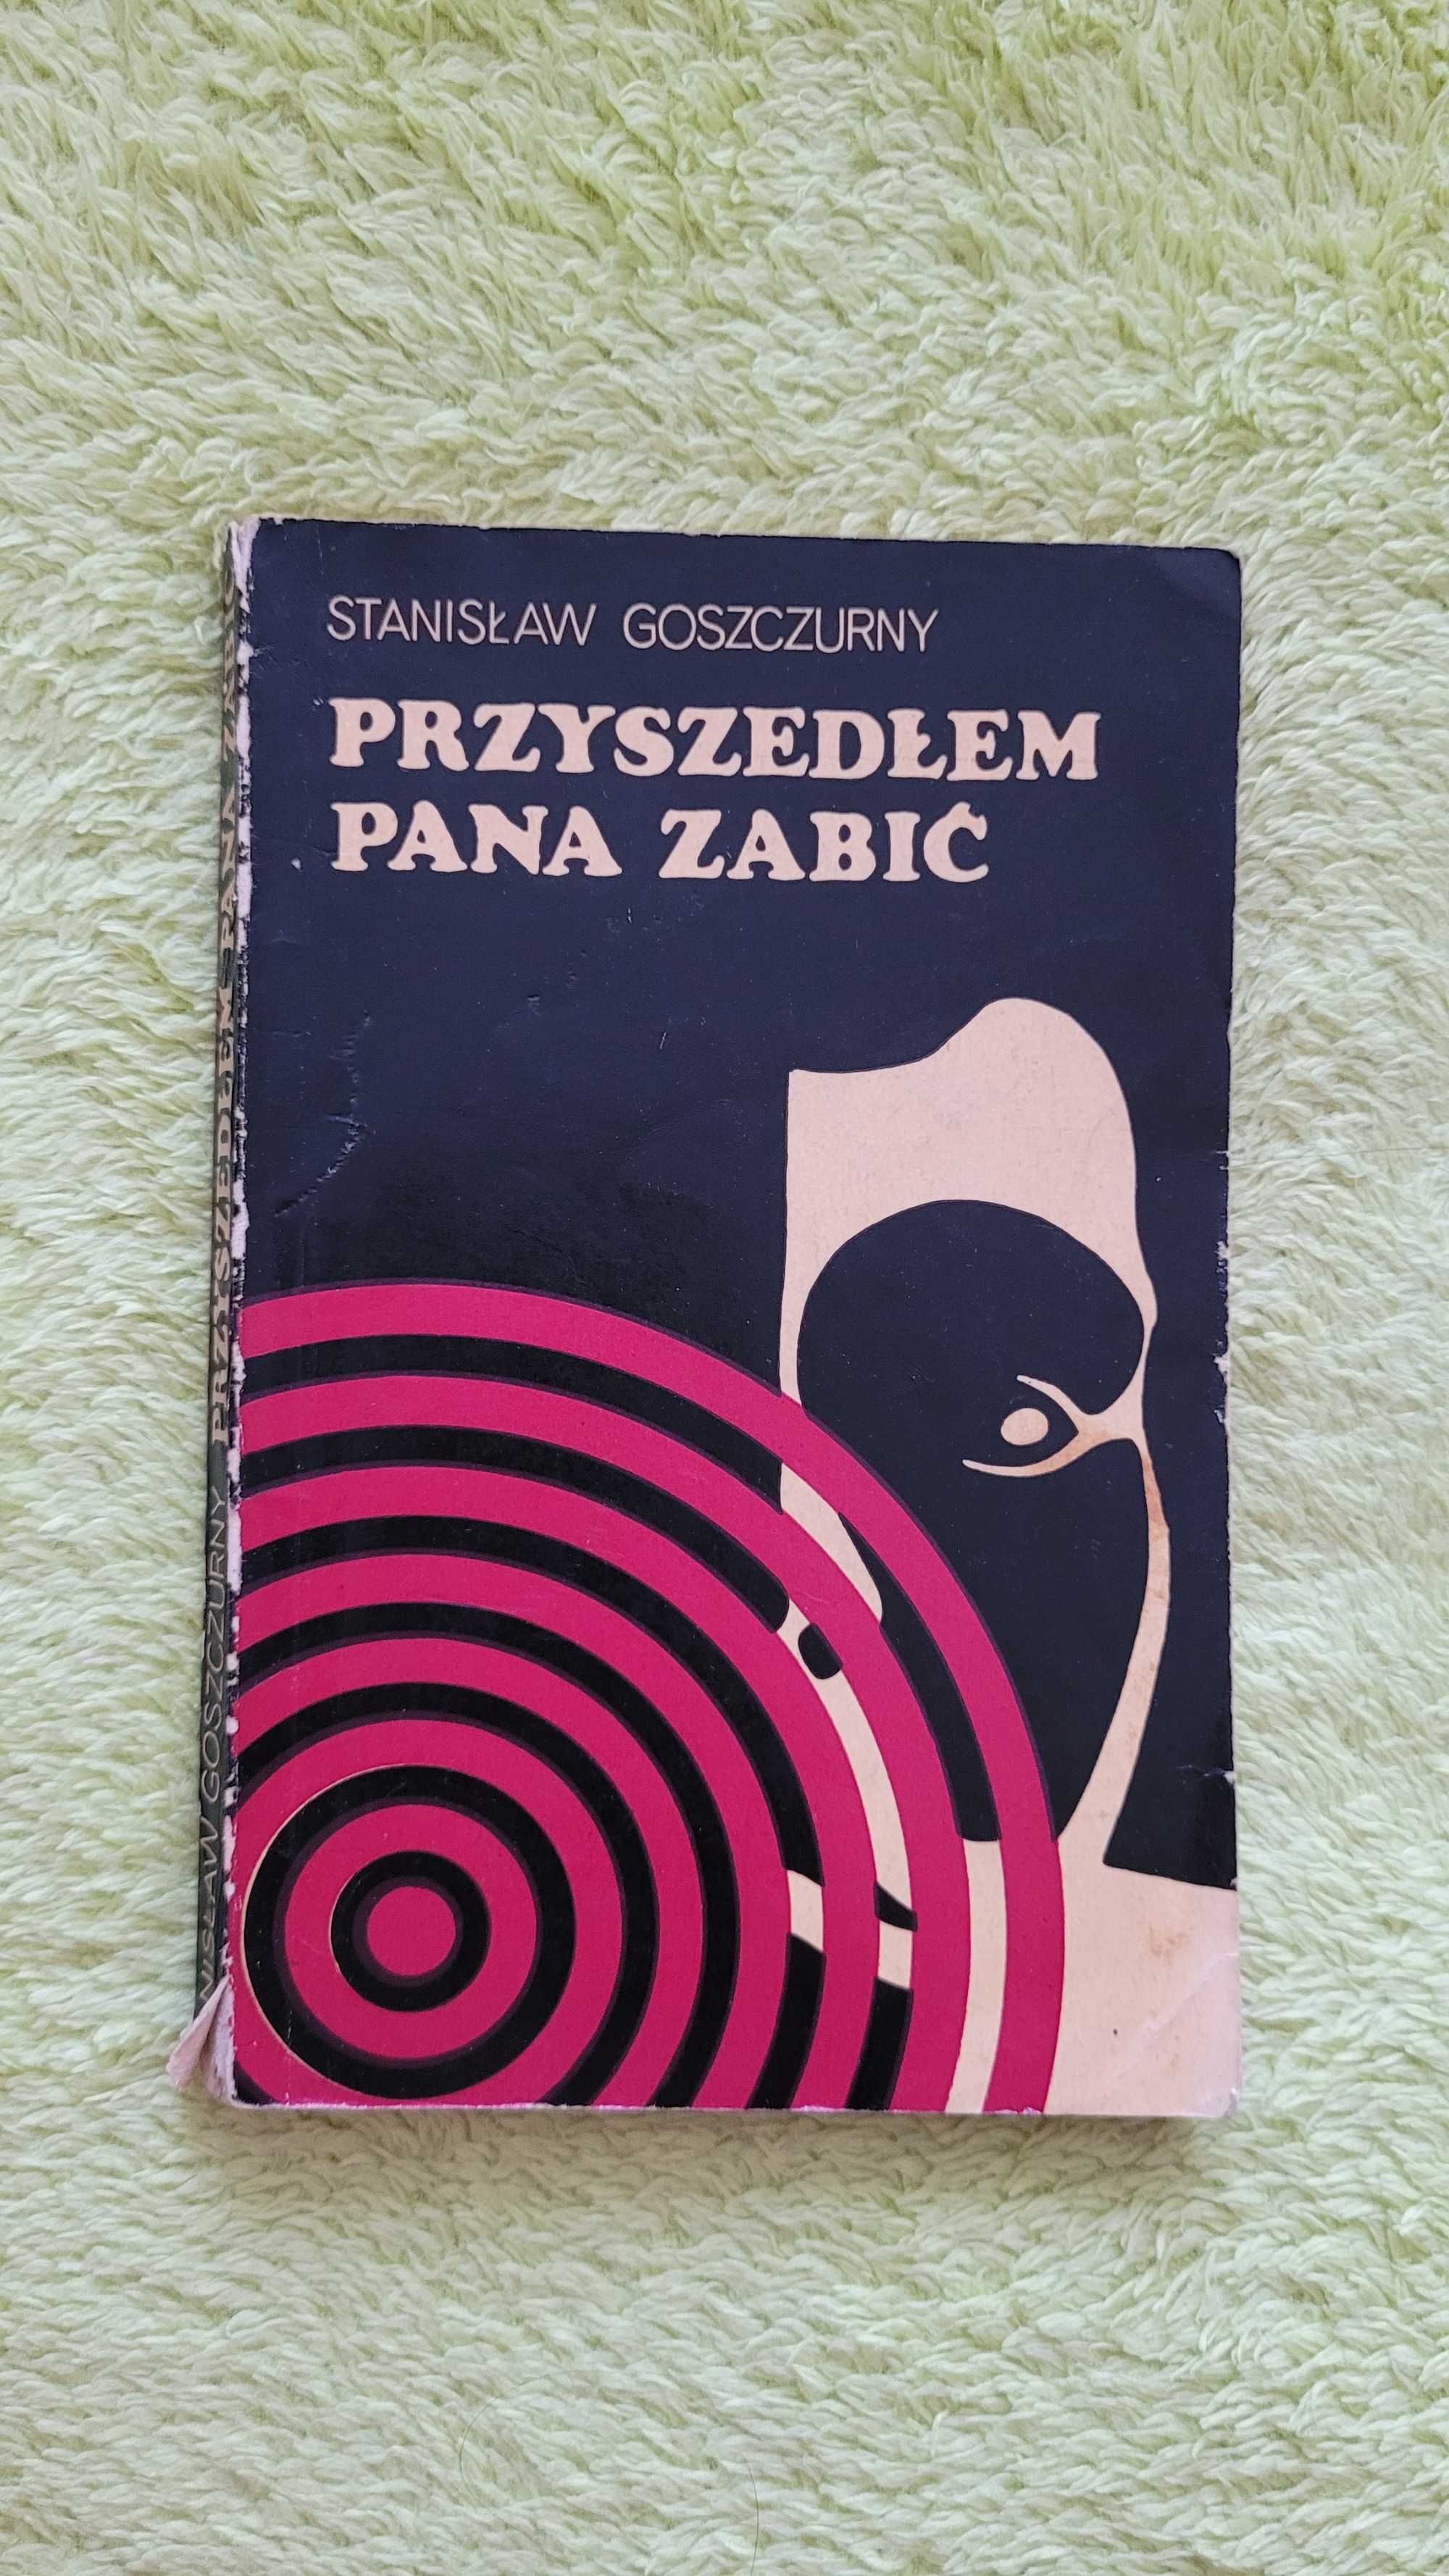 Książka: "Przyszedłem pana zabić", Stanisław Goszczurny